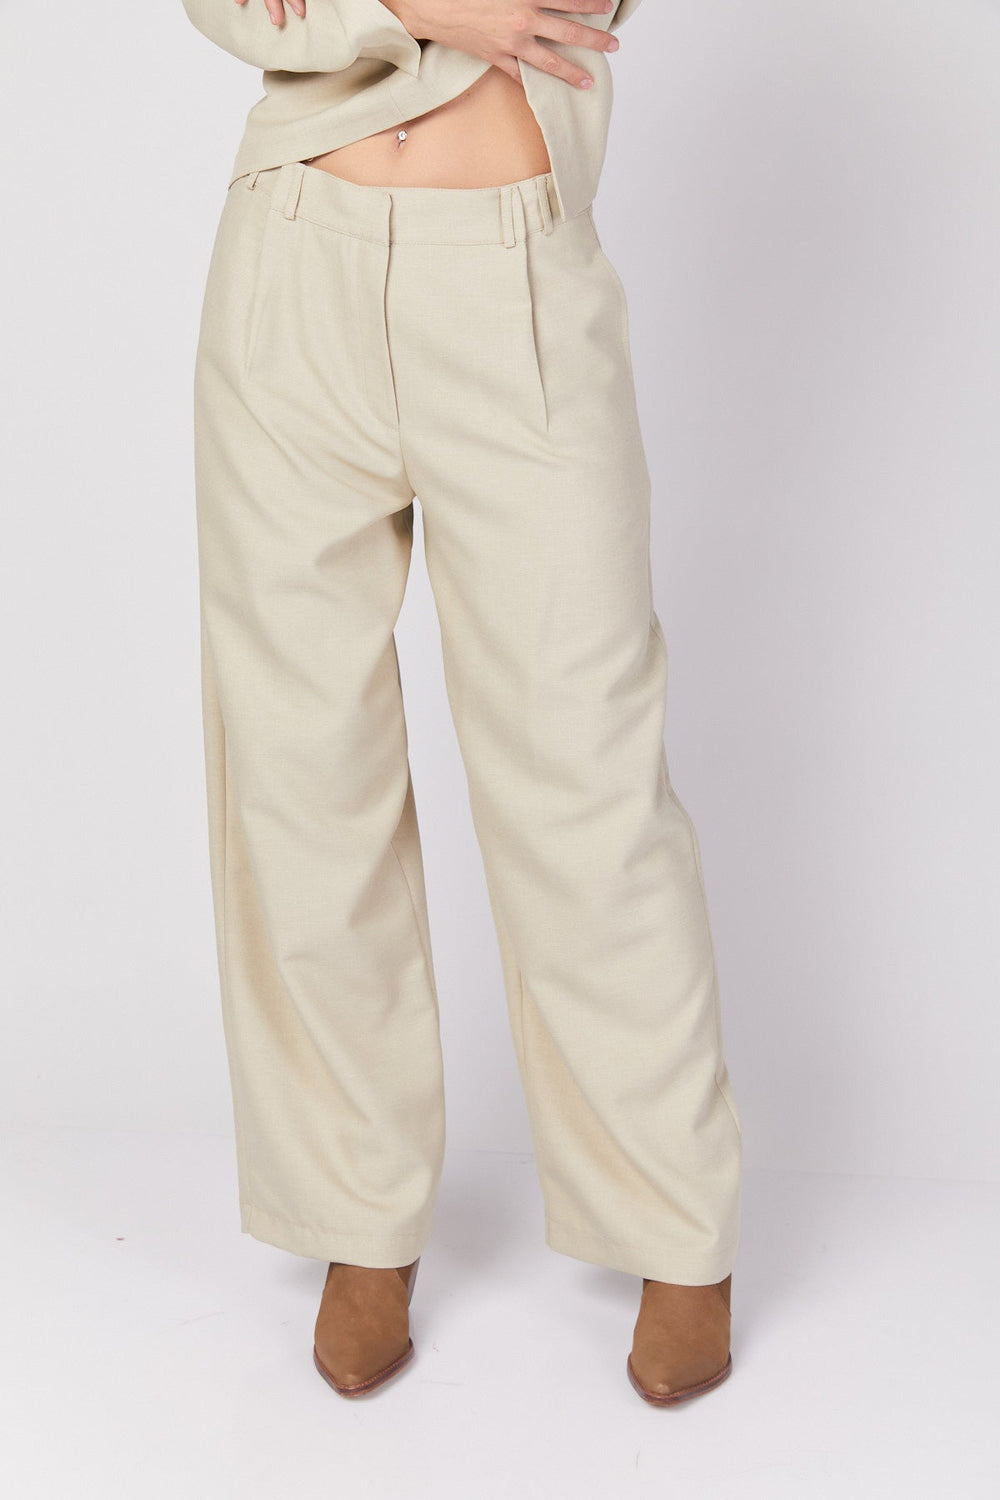 מכנסי ג'ונסון בצבע בז' - Dana Sidi